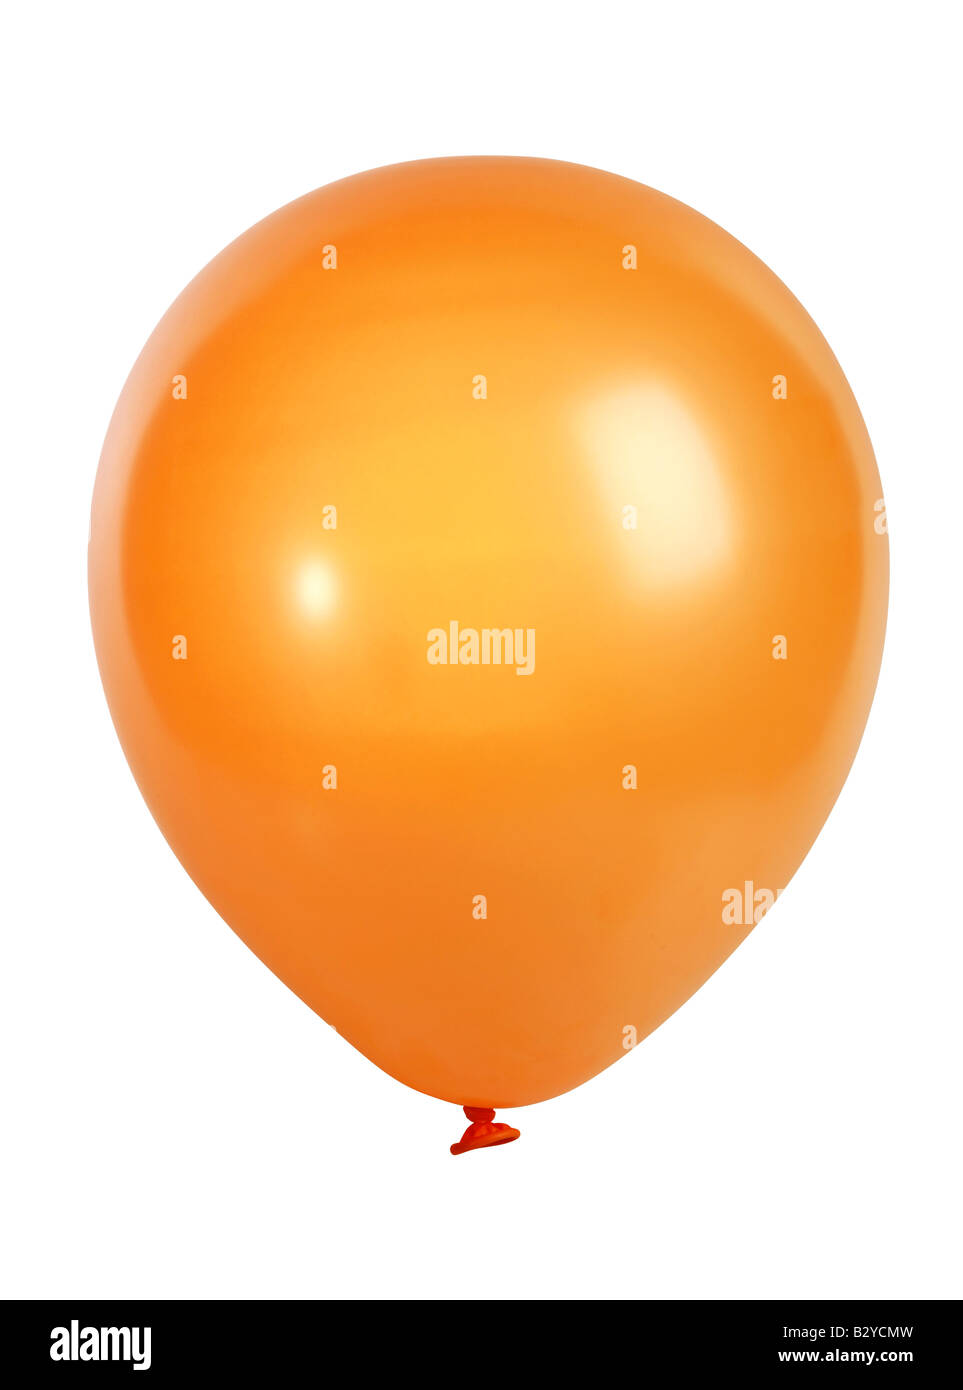 Studio Aufnahme eines orange Ballons isoliert auf weißem Hintergrund XXL-Datei mit einer hochauflösenden Kamera 21 Megapixel geschossen Stockfoto